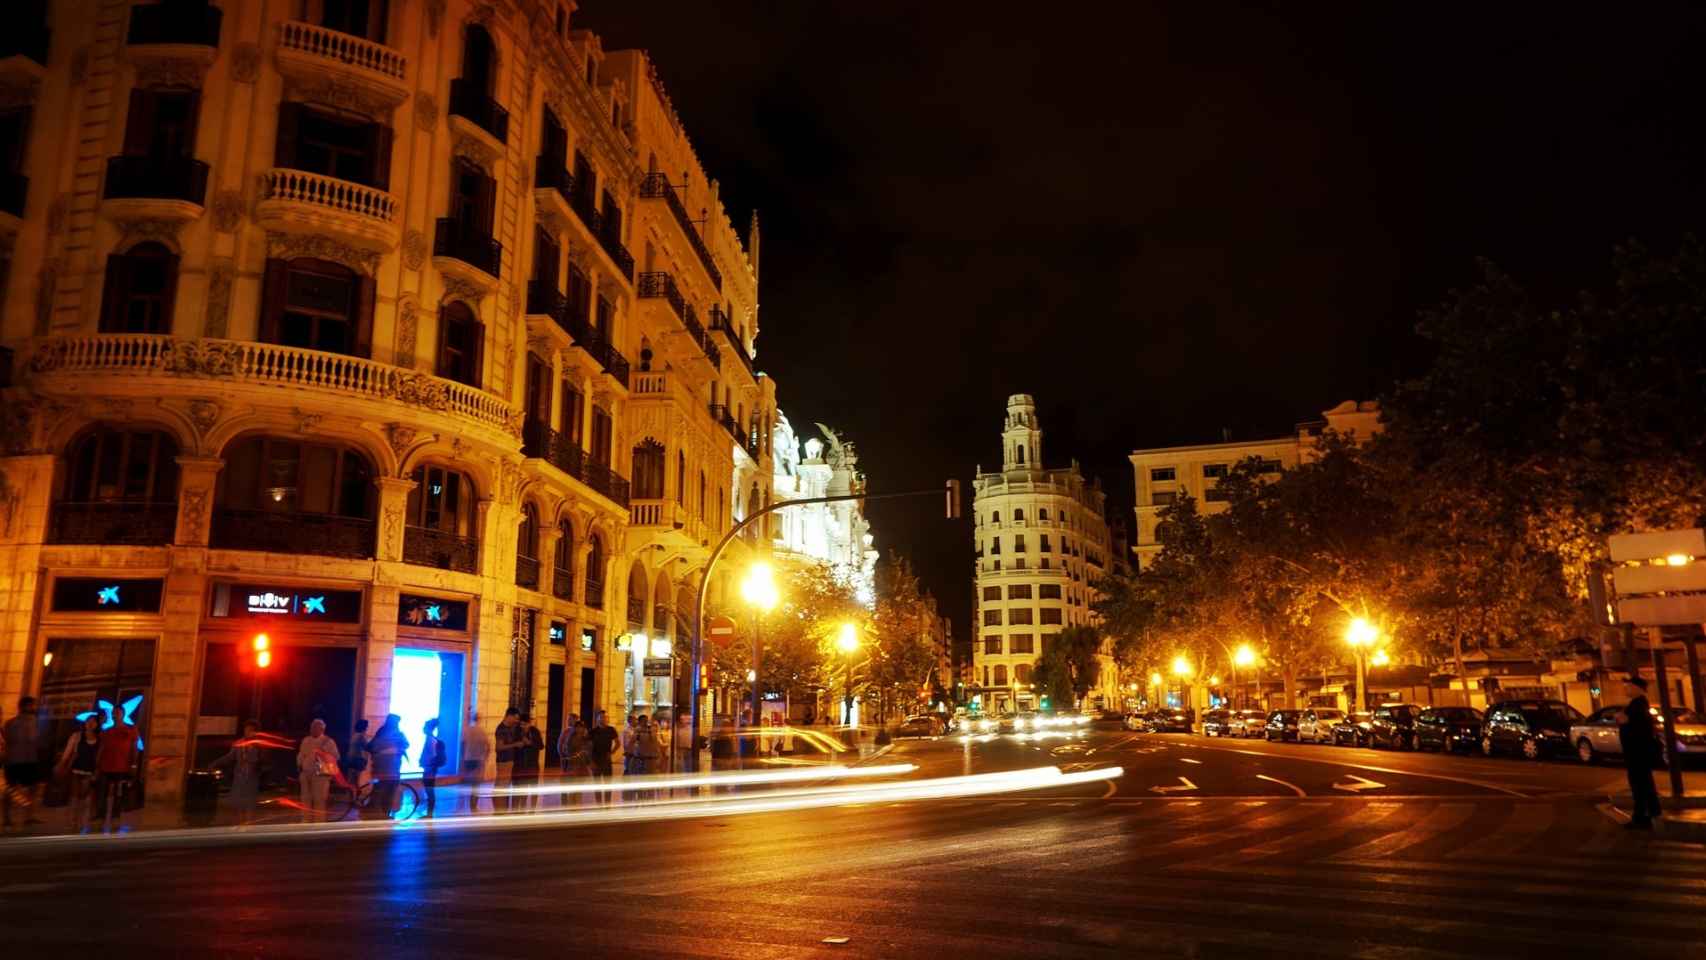 La plaza del Ayuntamiento de Valencia, centro neurálgico de la ciudad, iluminada por la noche.